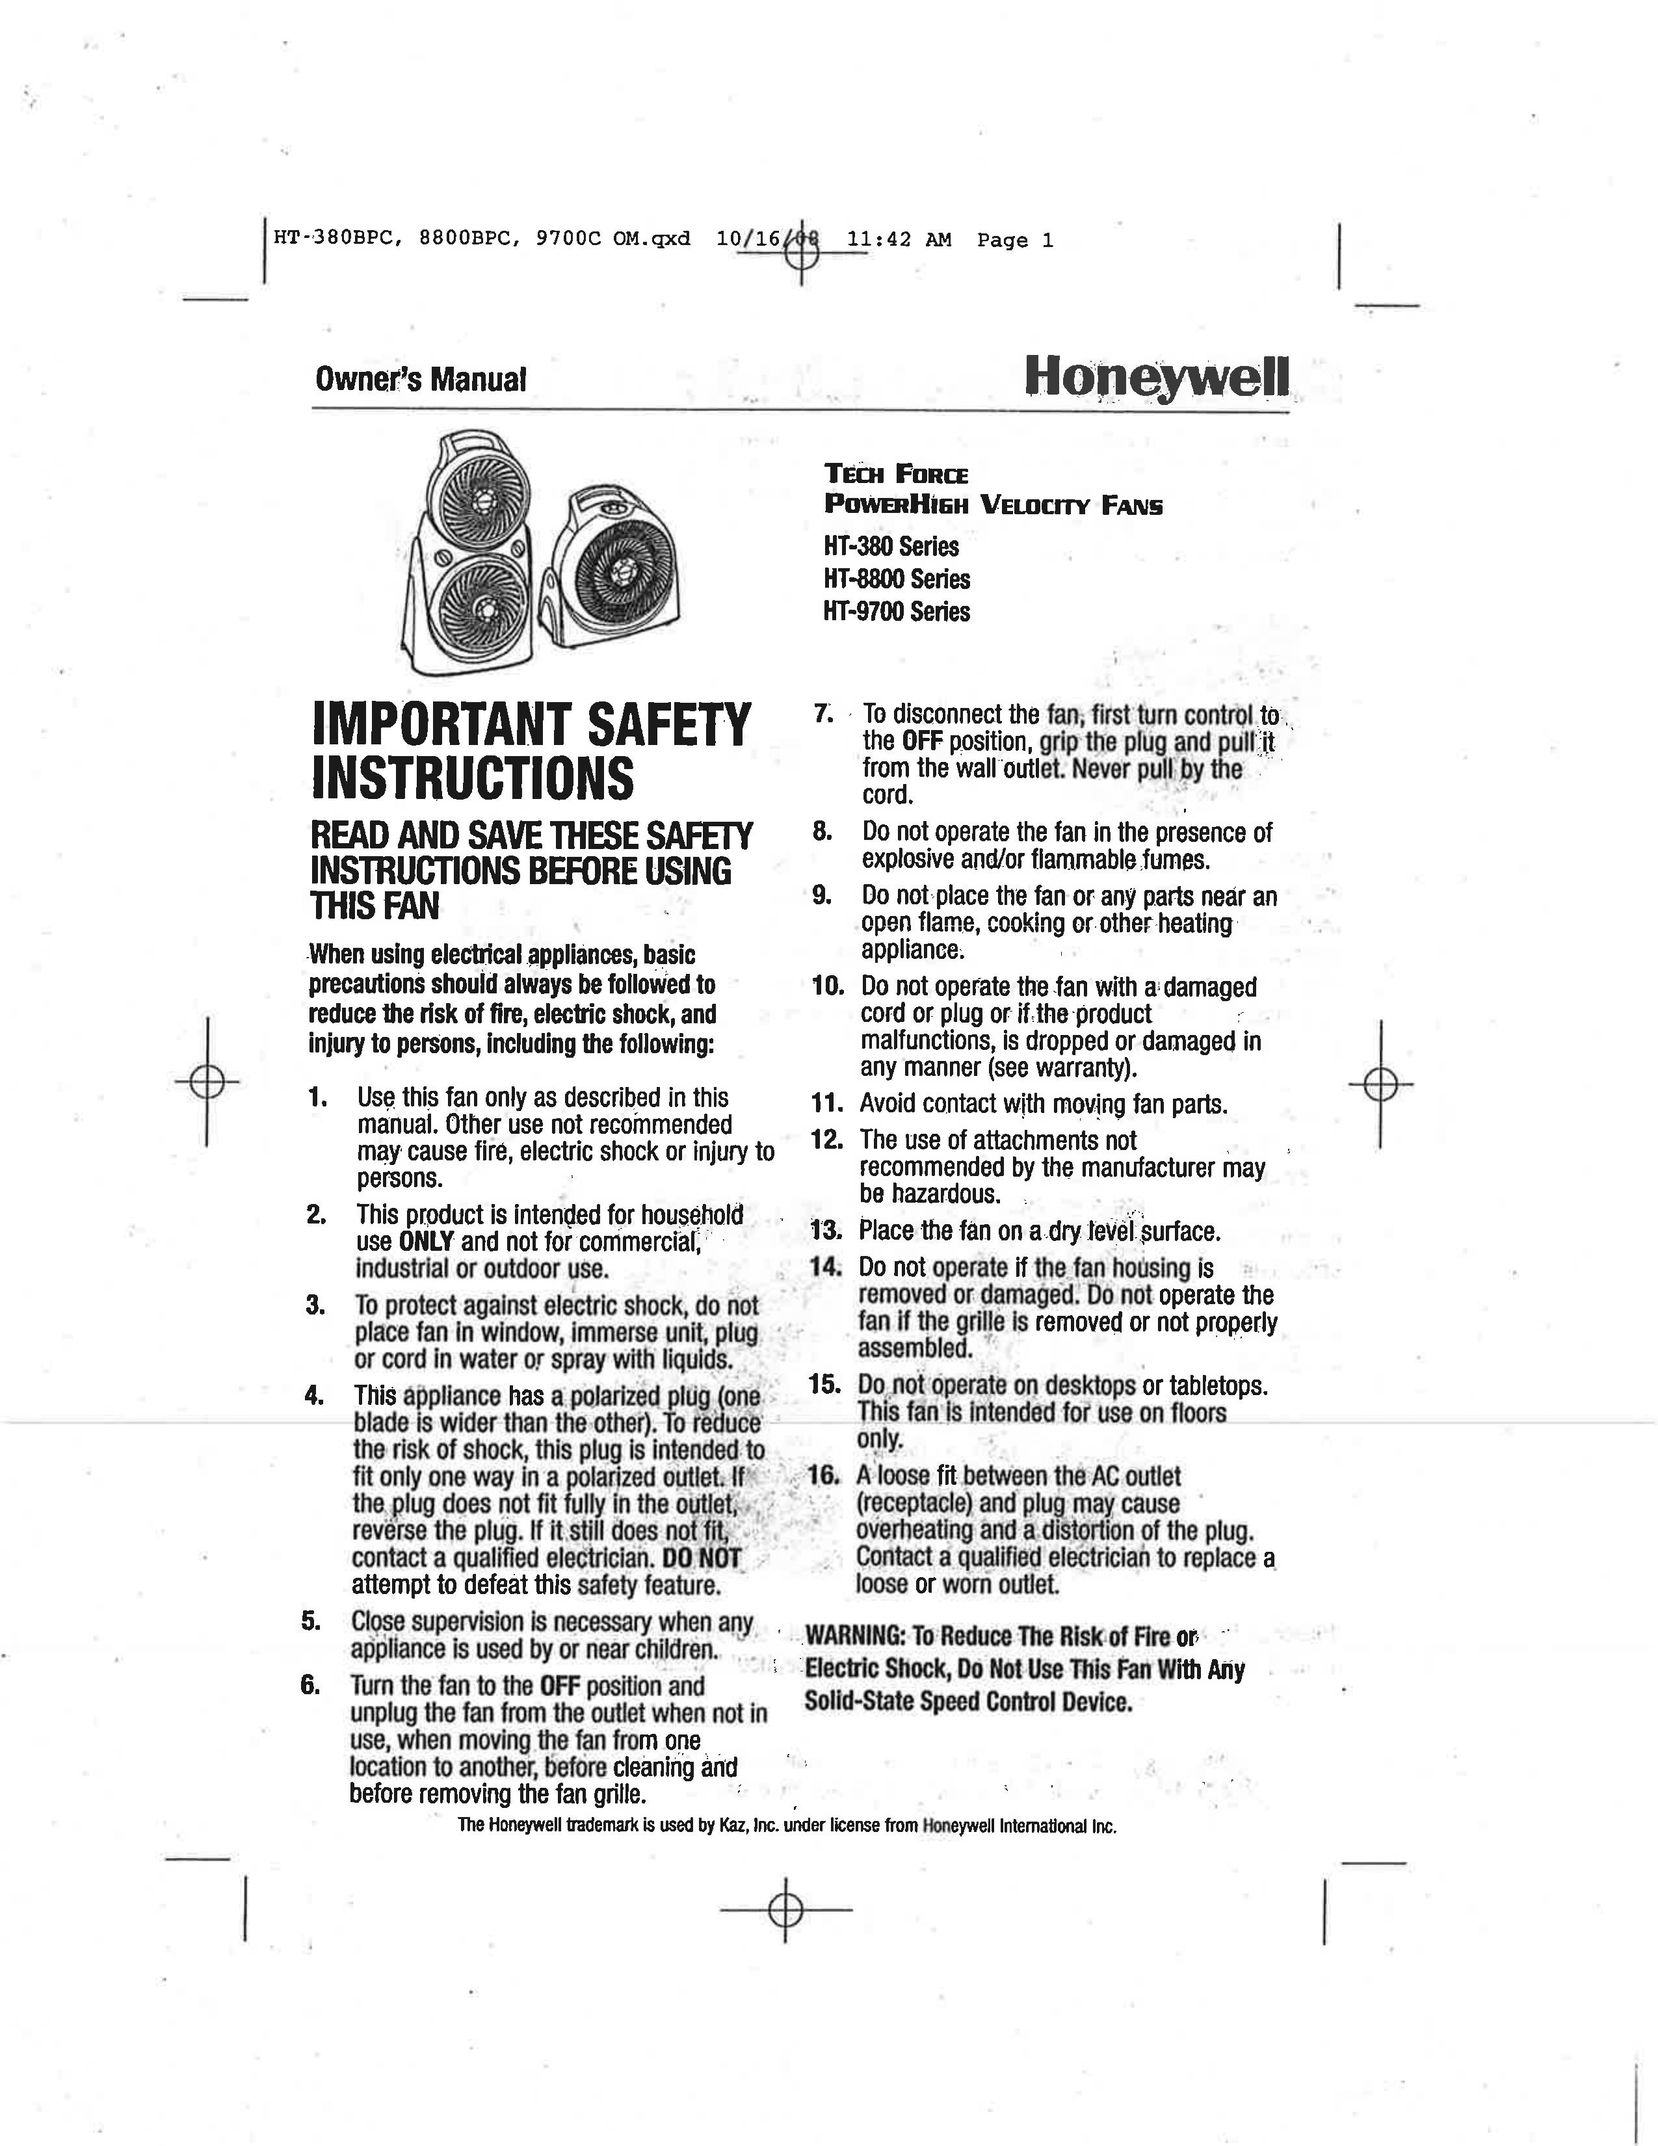 Honeywell HT9700 Fan User Manual